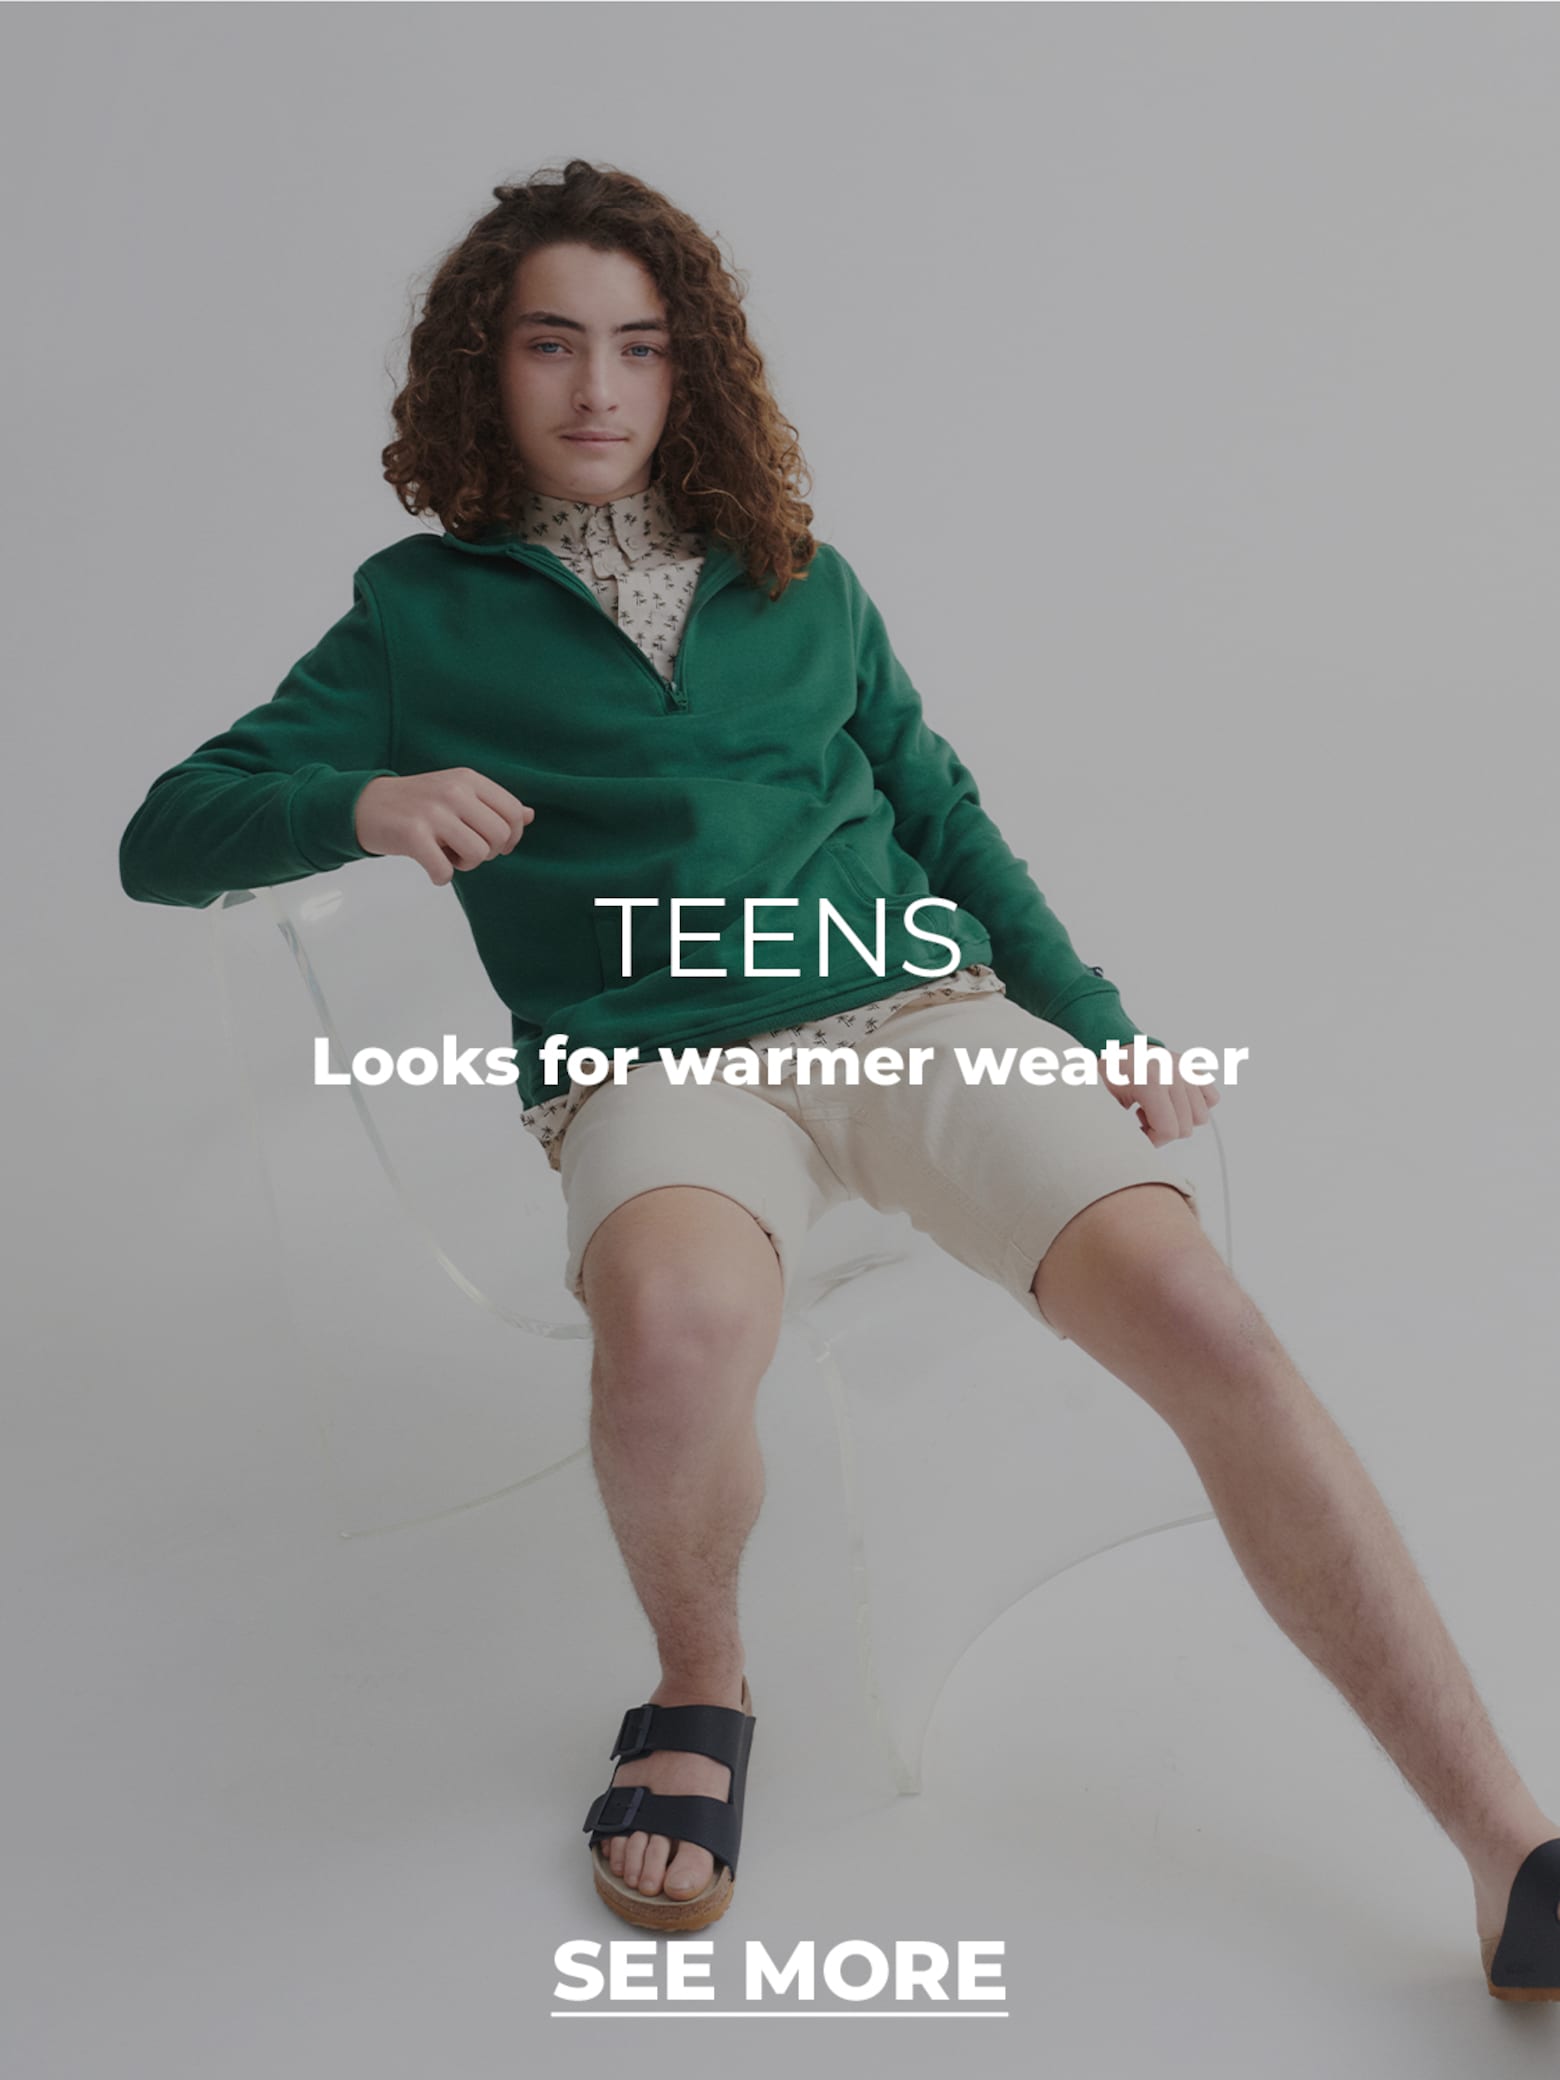 Des associations cool pour les garçons Des vêtements pour les jours chauds